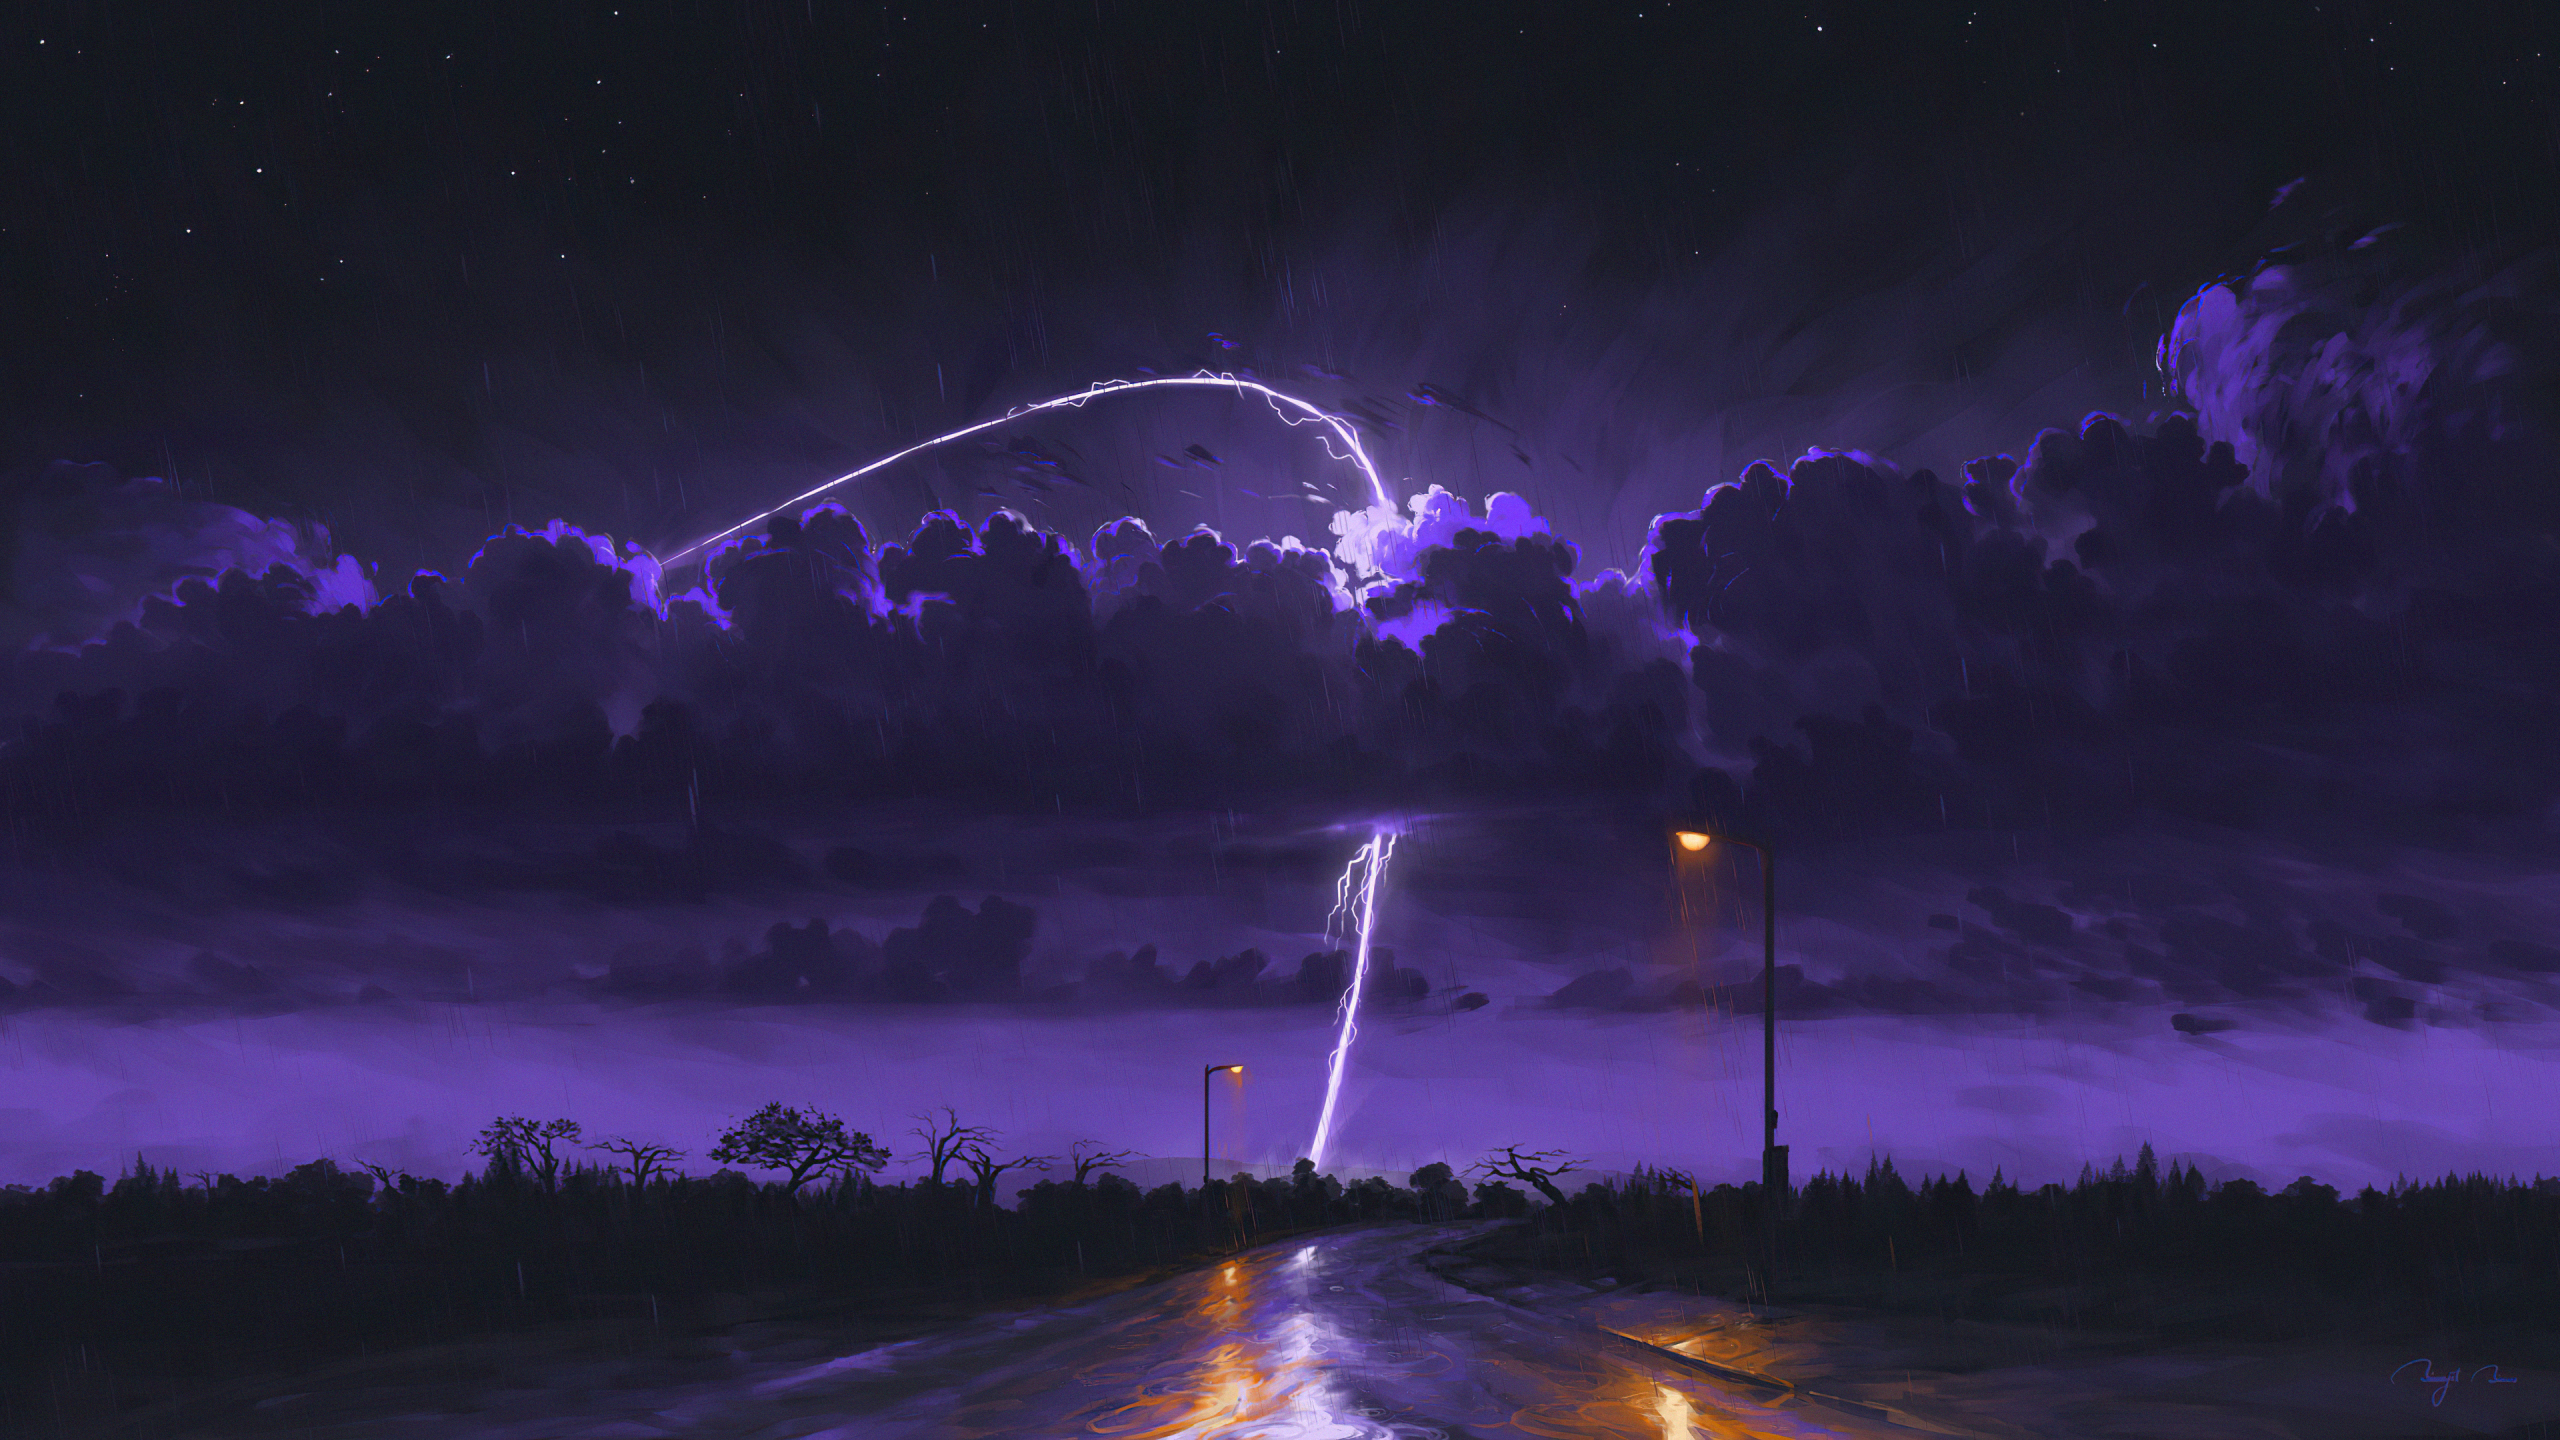 Rainy and stormy night, dark, art, 2560x1440 wallpaper